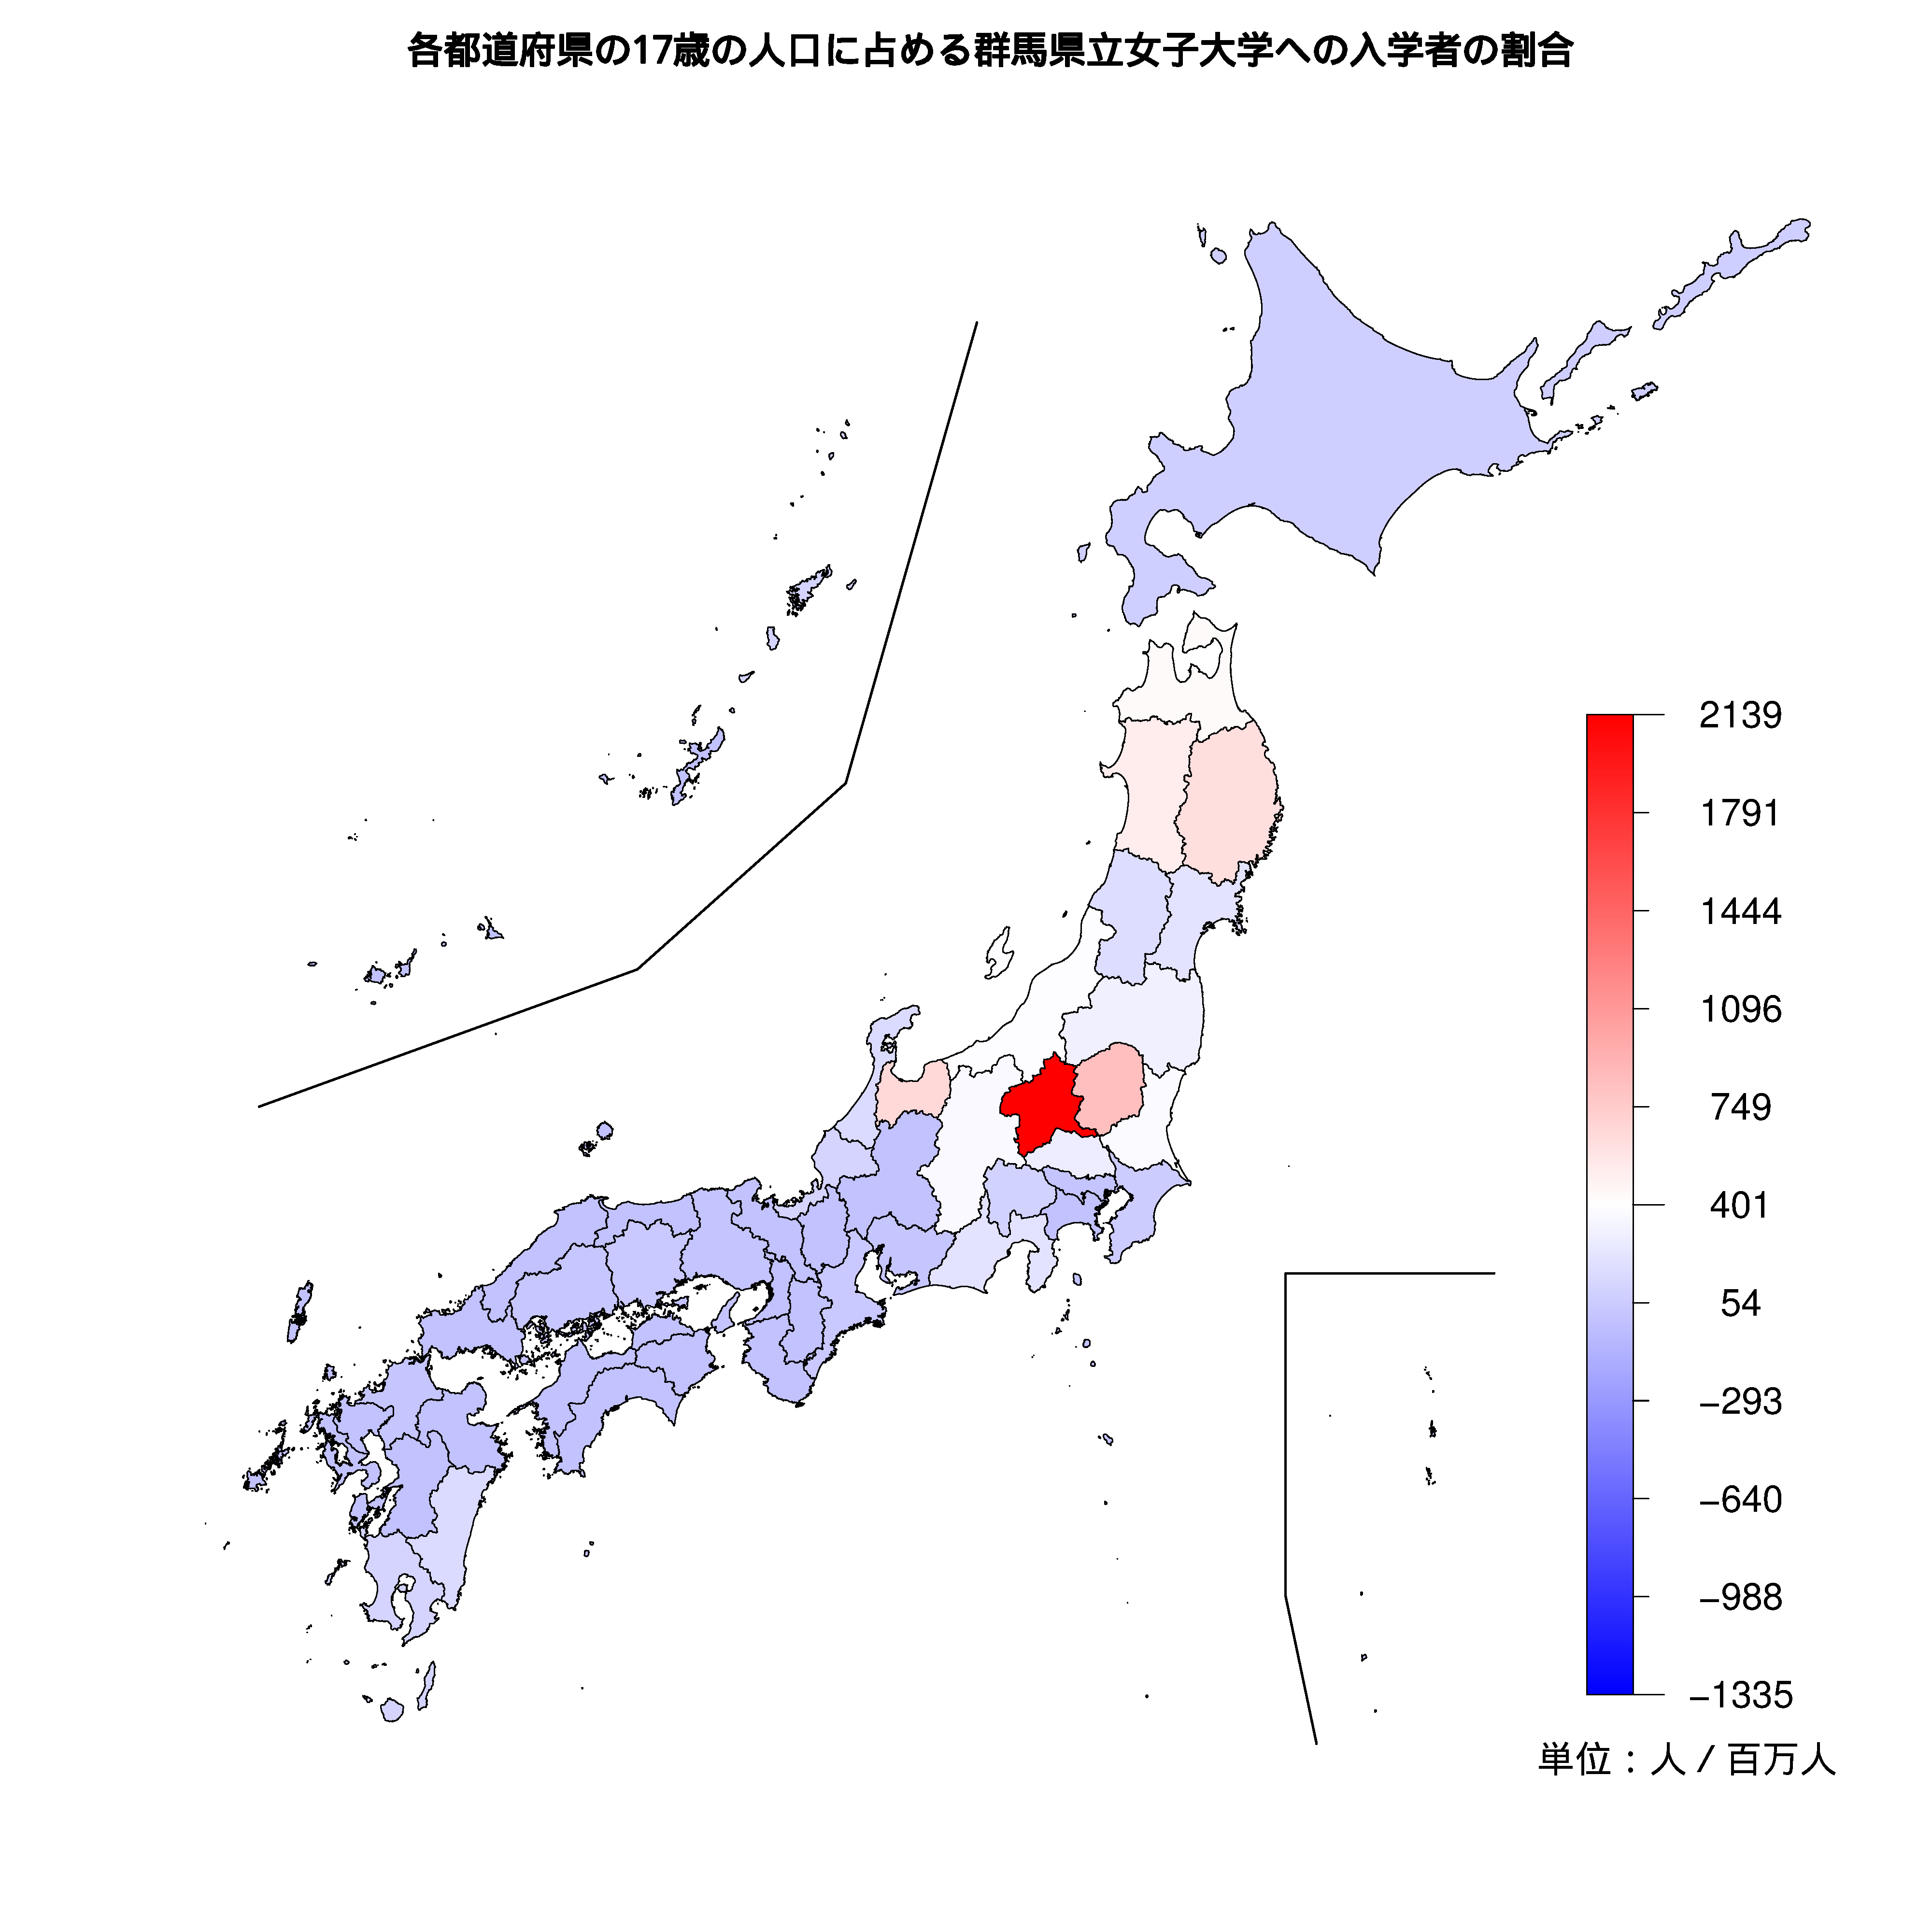 群馬県立女子大学への入学者が多い都道府県の色分け地図